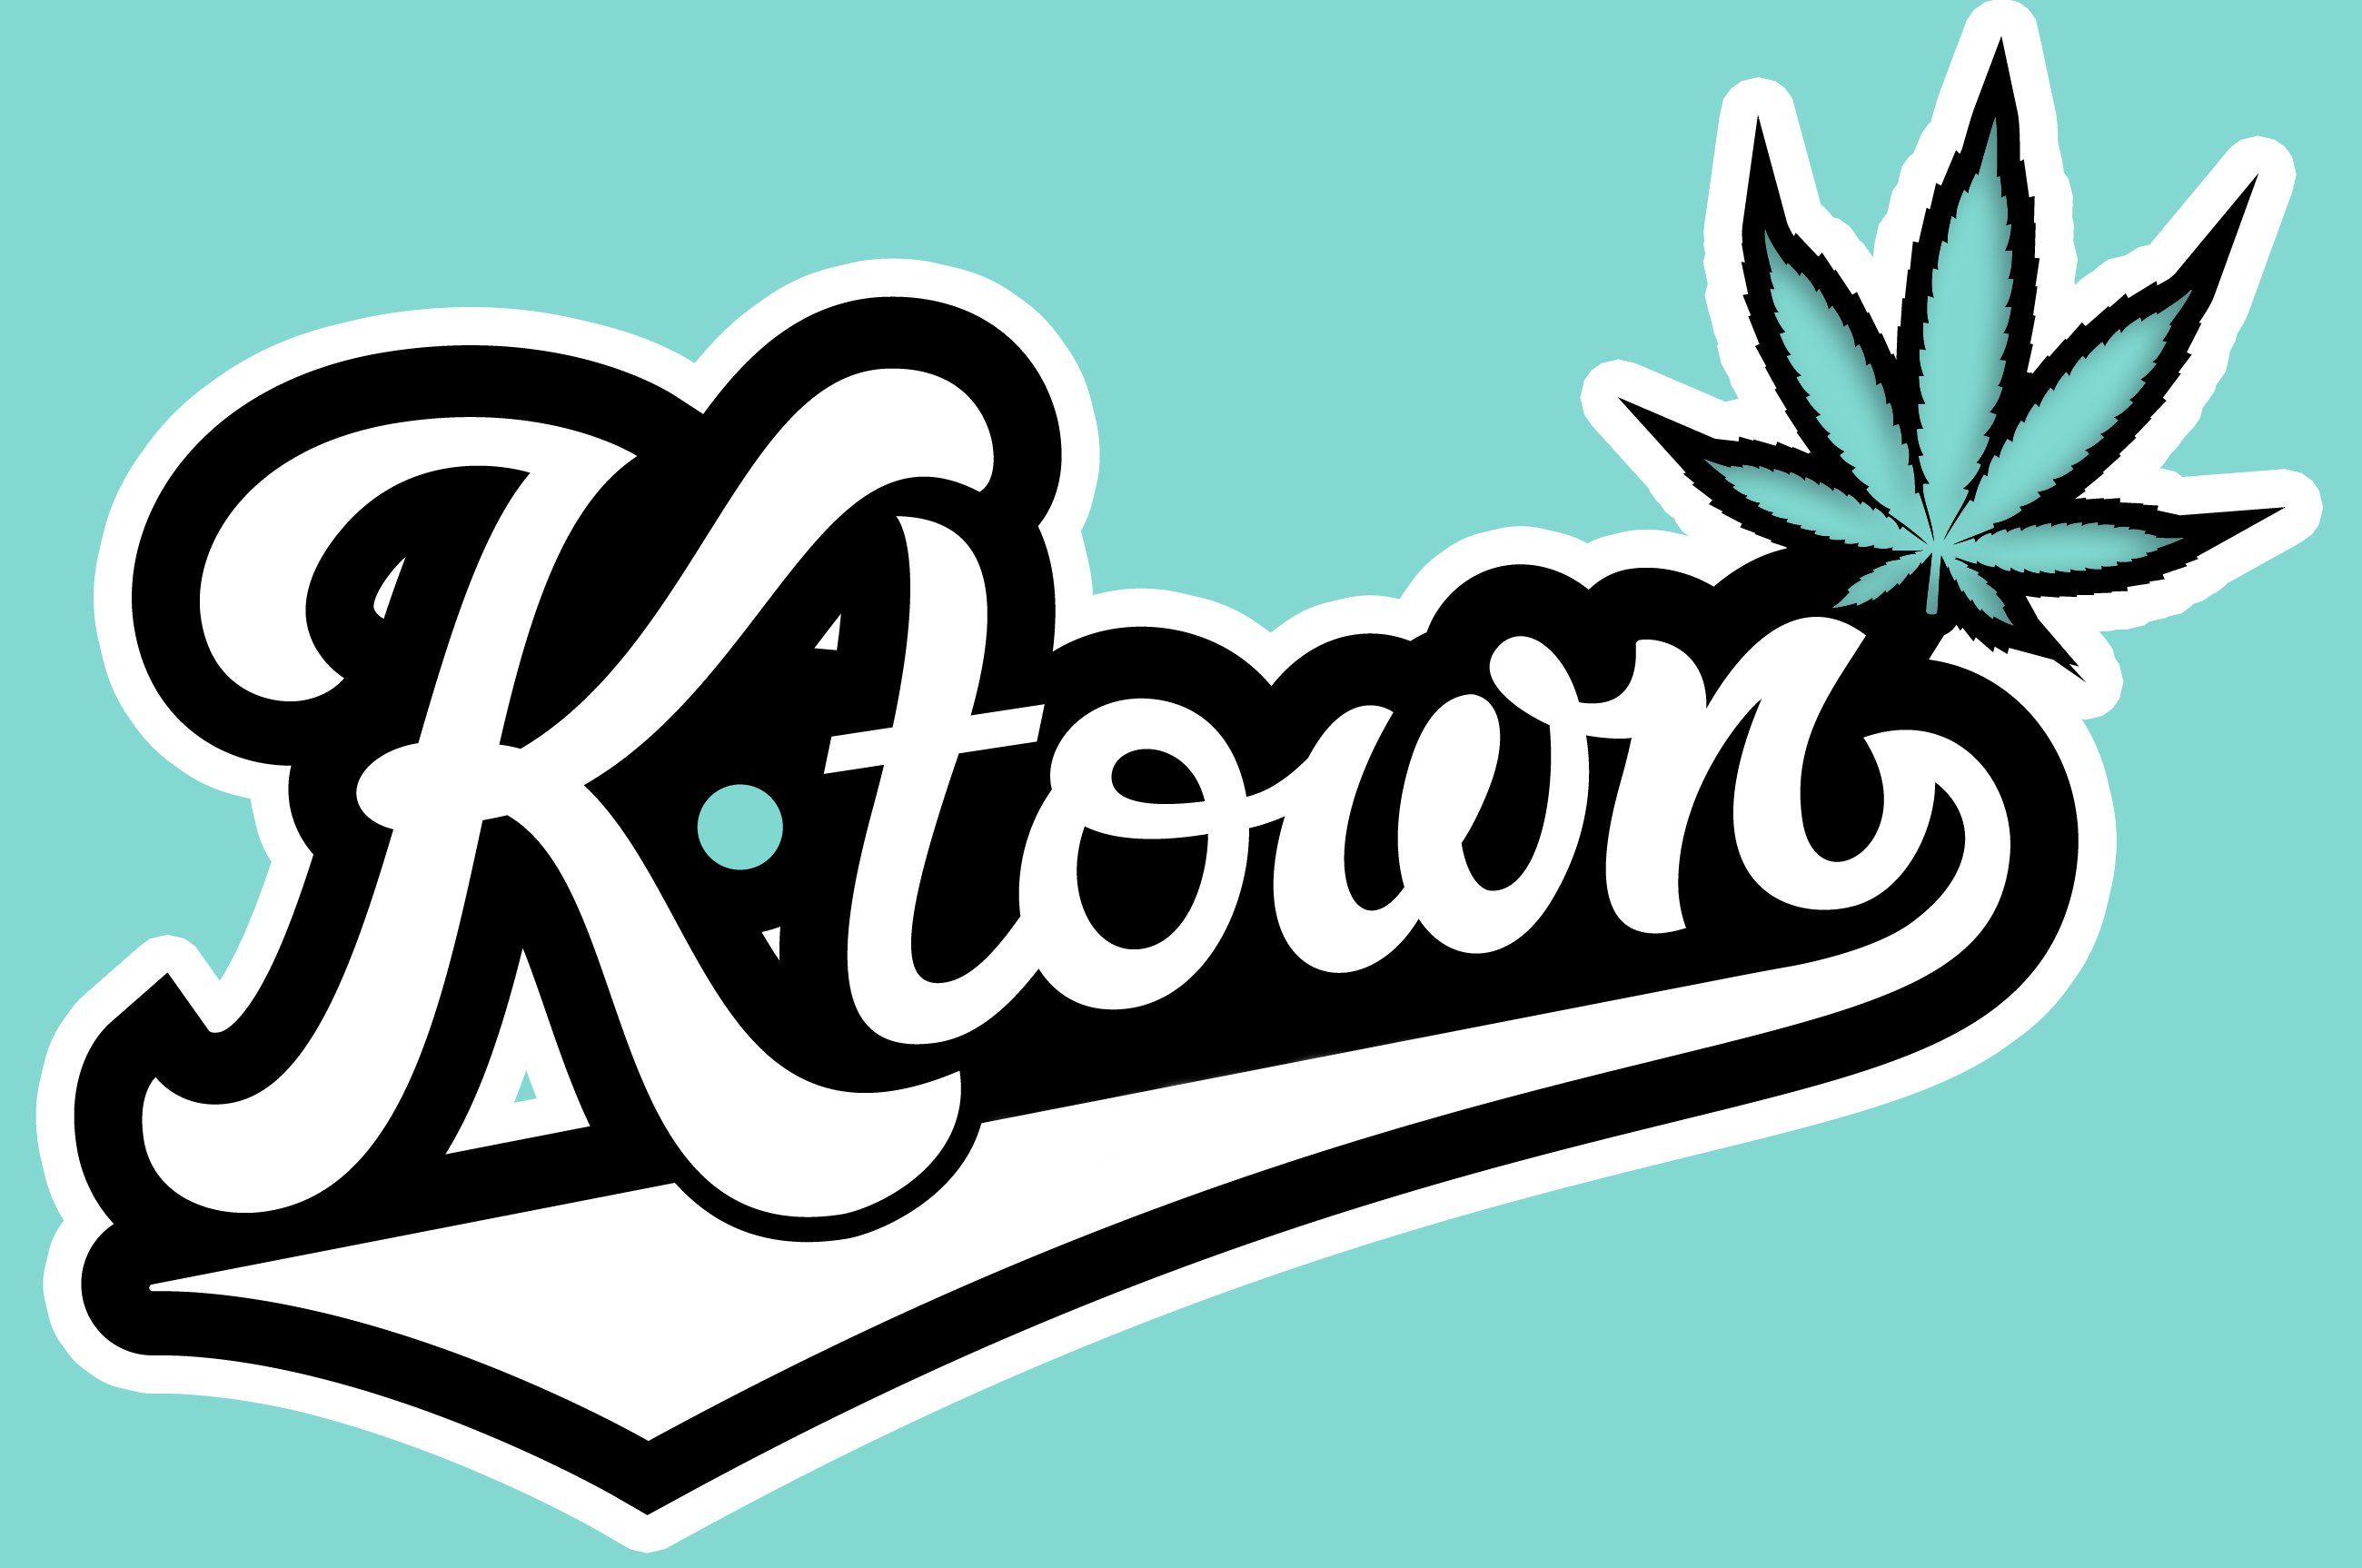 Ktown Collective logo